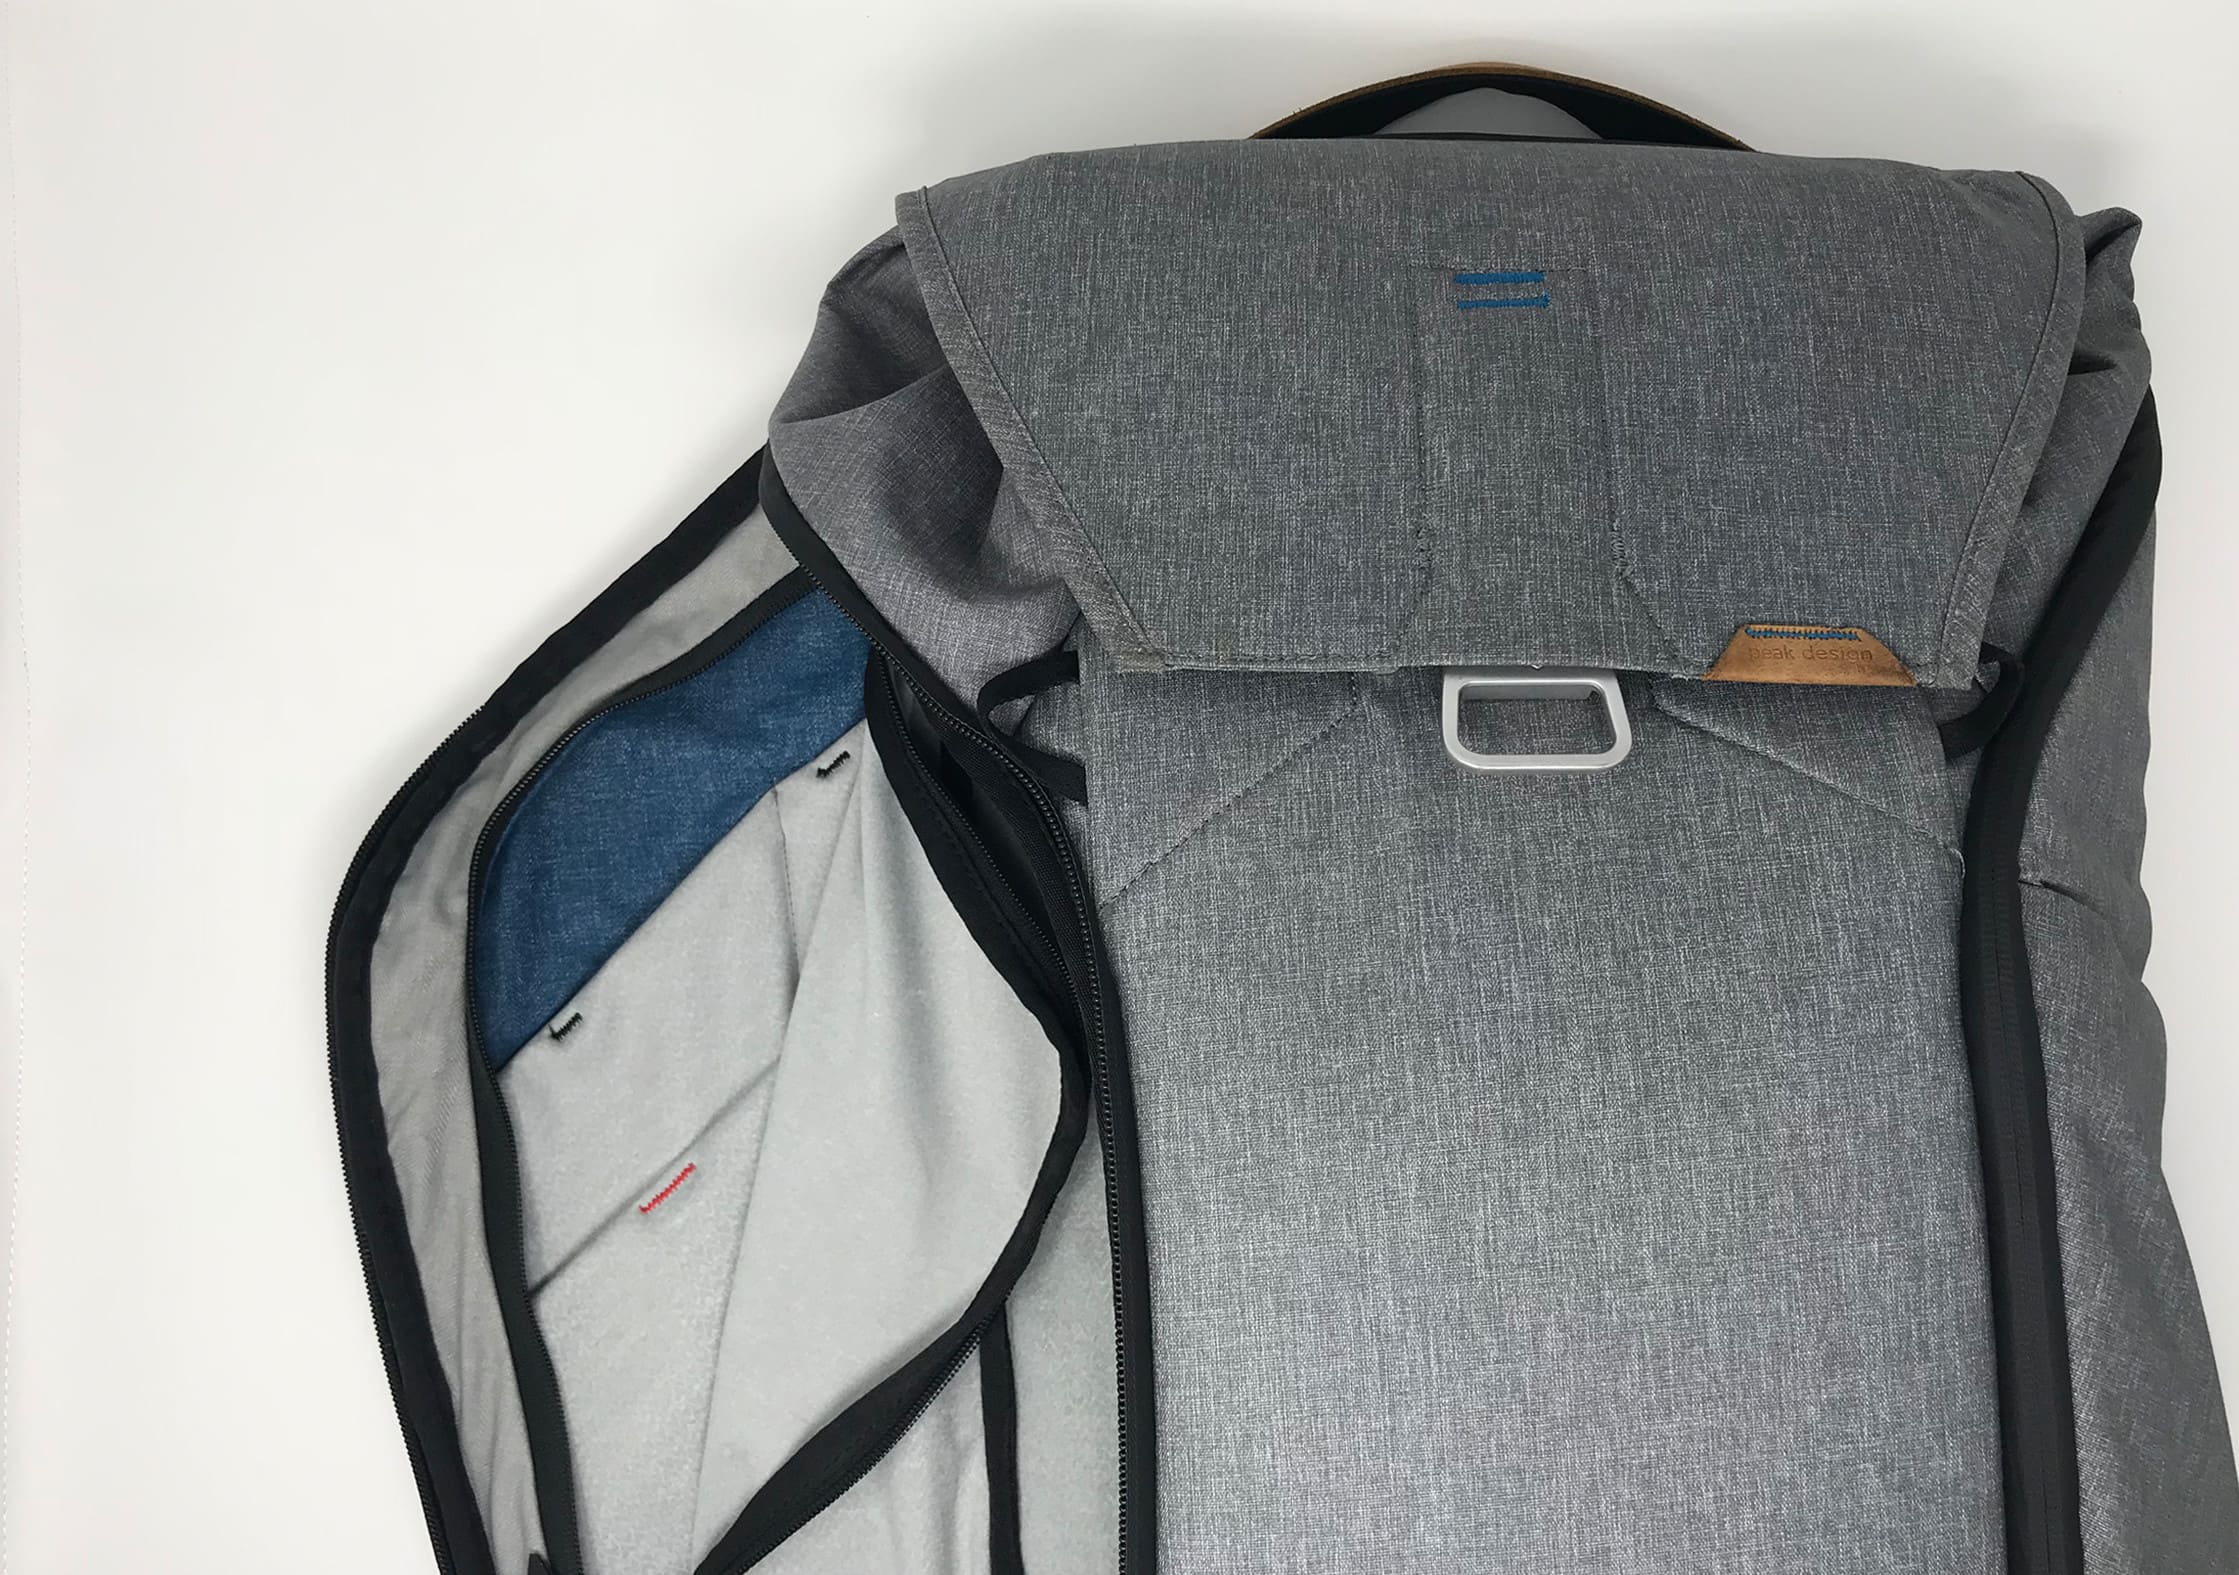 Peak Design Everyday Backpack internal pockets/